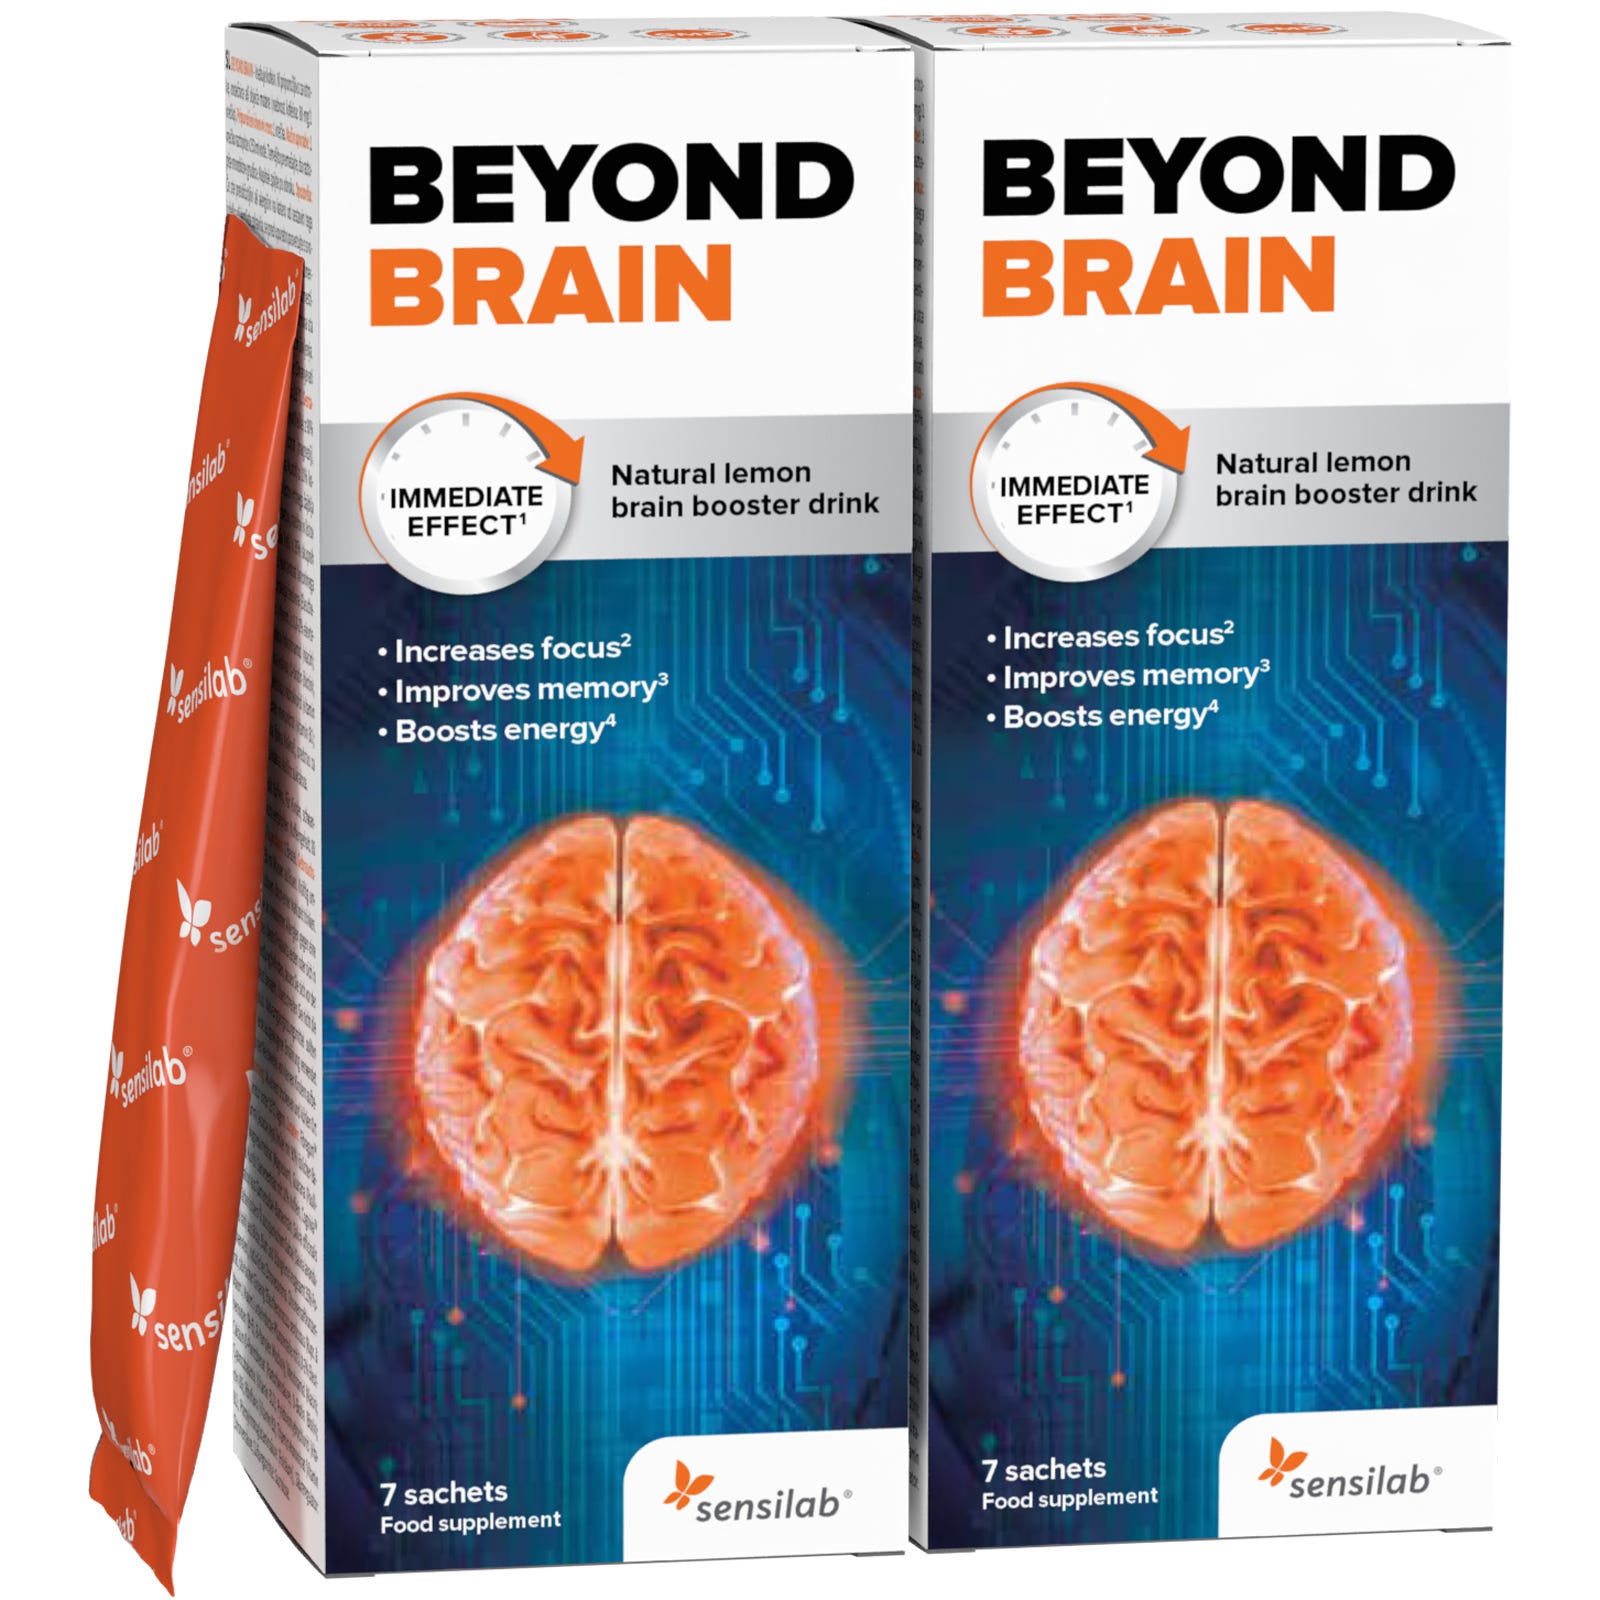 Beyond Brain nootrópico |Para mejorar la concentración|Efecto inmediato, 6 horas de aumento de la concentración |Sabor a limón |Para 14 días| Sensilab